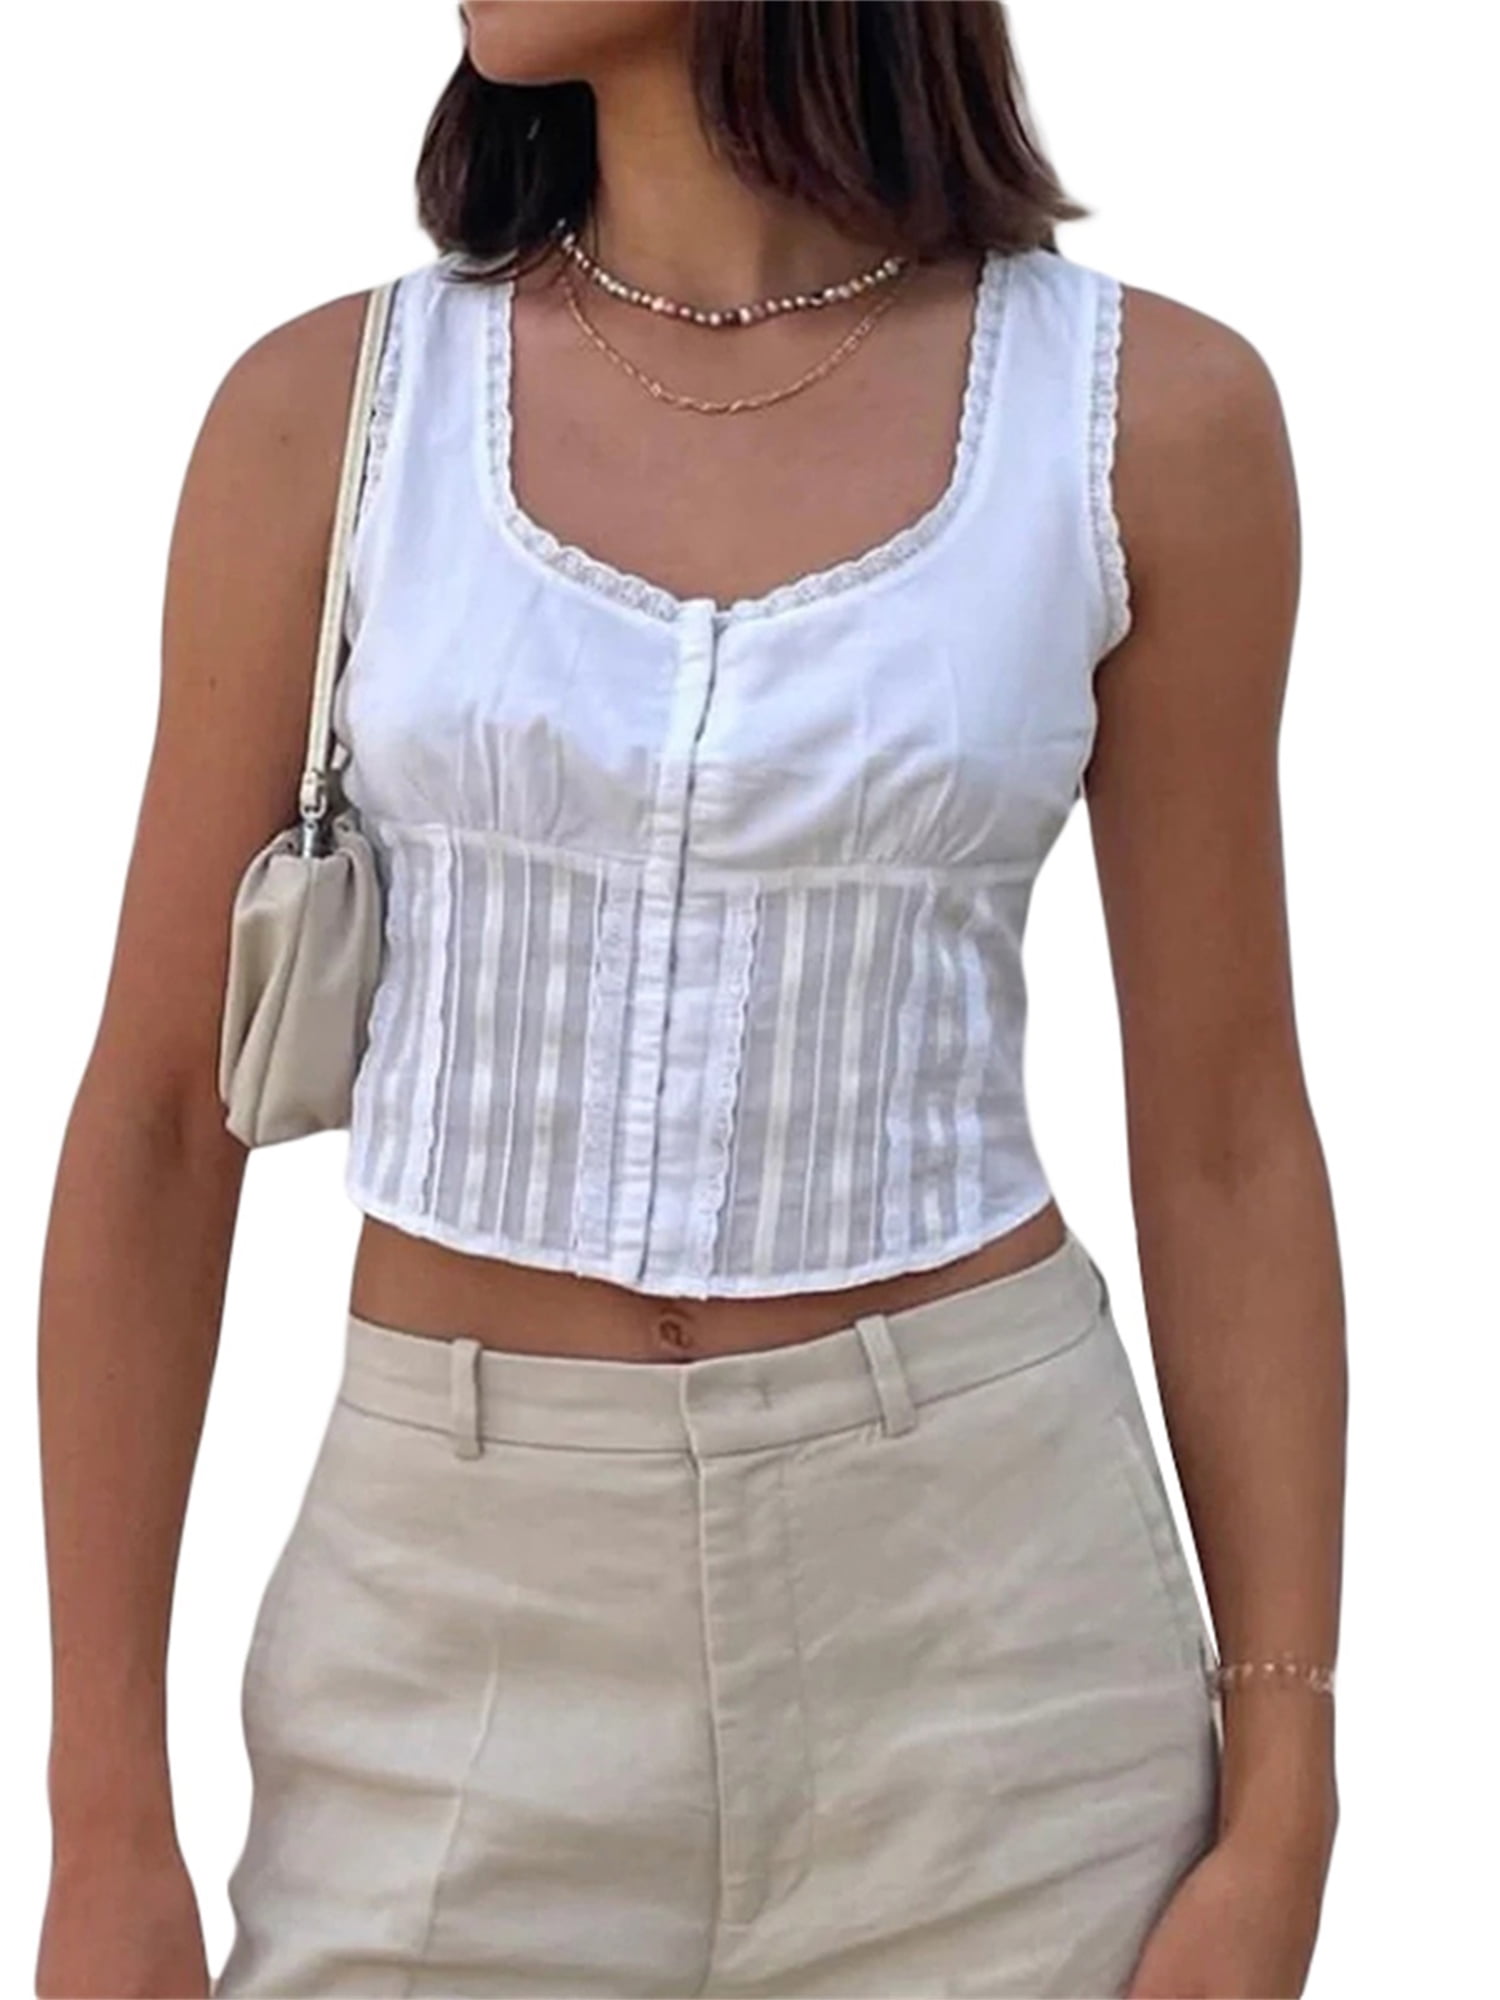 1 Pcs Mesh See-through Transparent Crop Top Crop Top Summer Women Casual Tank  Top Vest Blouse Sleeveless Sport Crop Tops Shirt